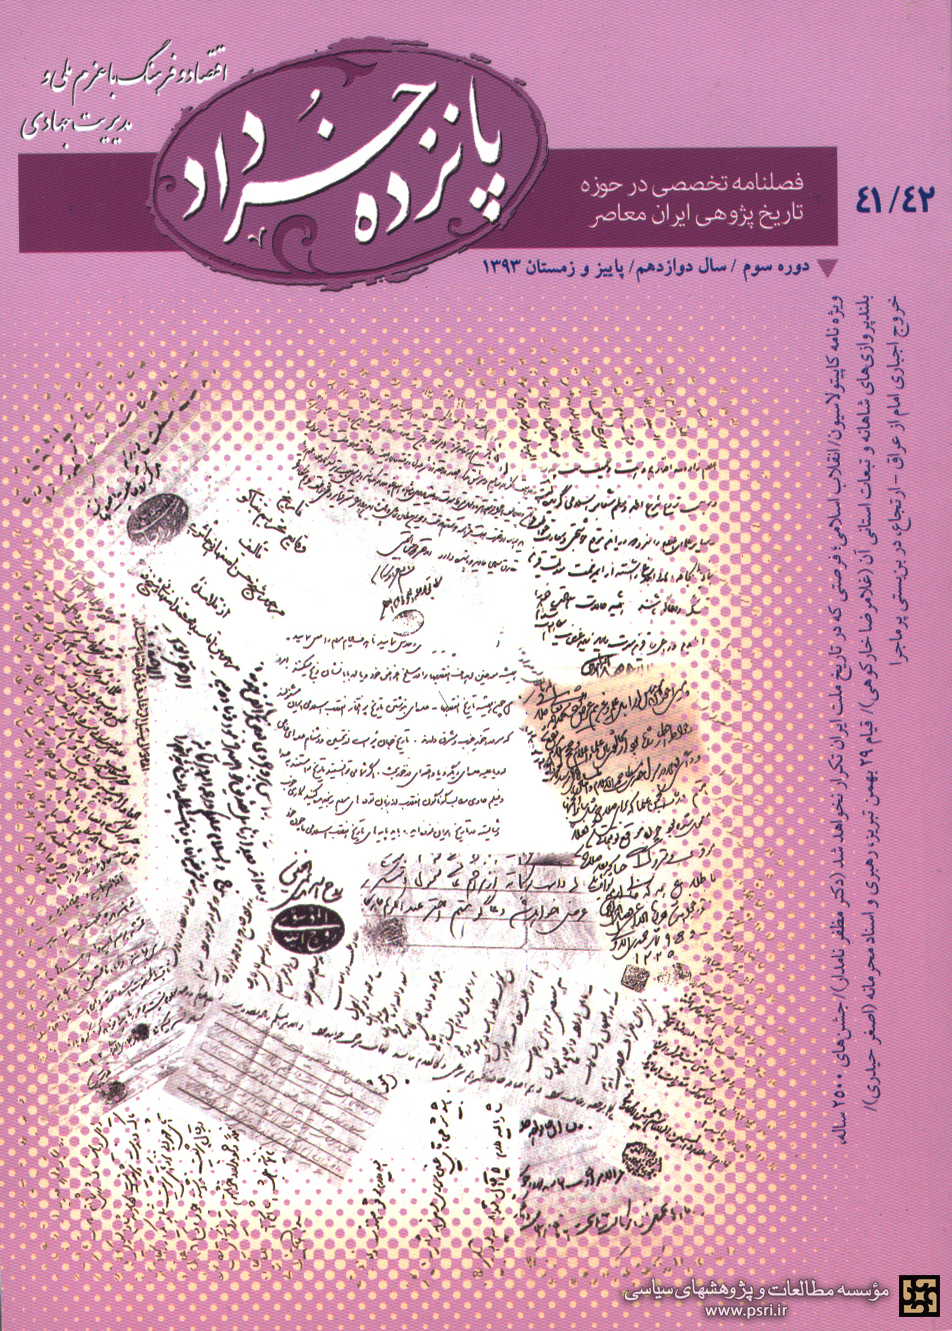 شناخت کاپیتولاسیون ، در جدیدترین شماره فصلنامه «پانزده خرداد»